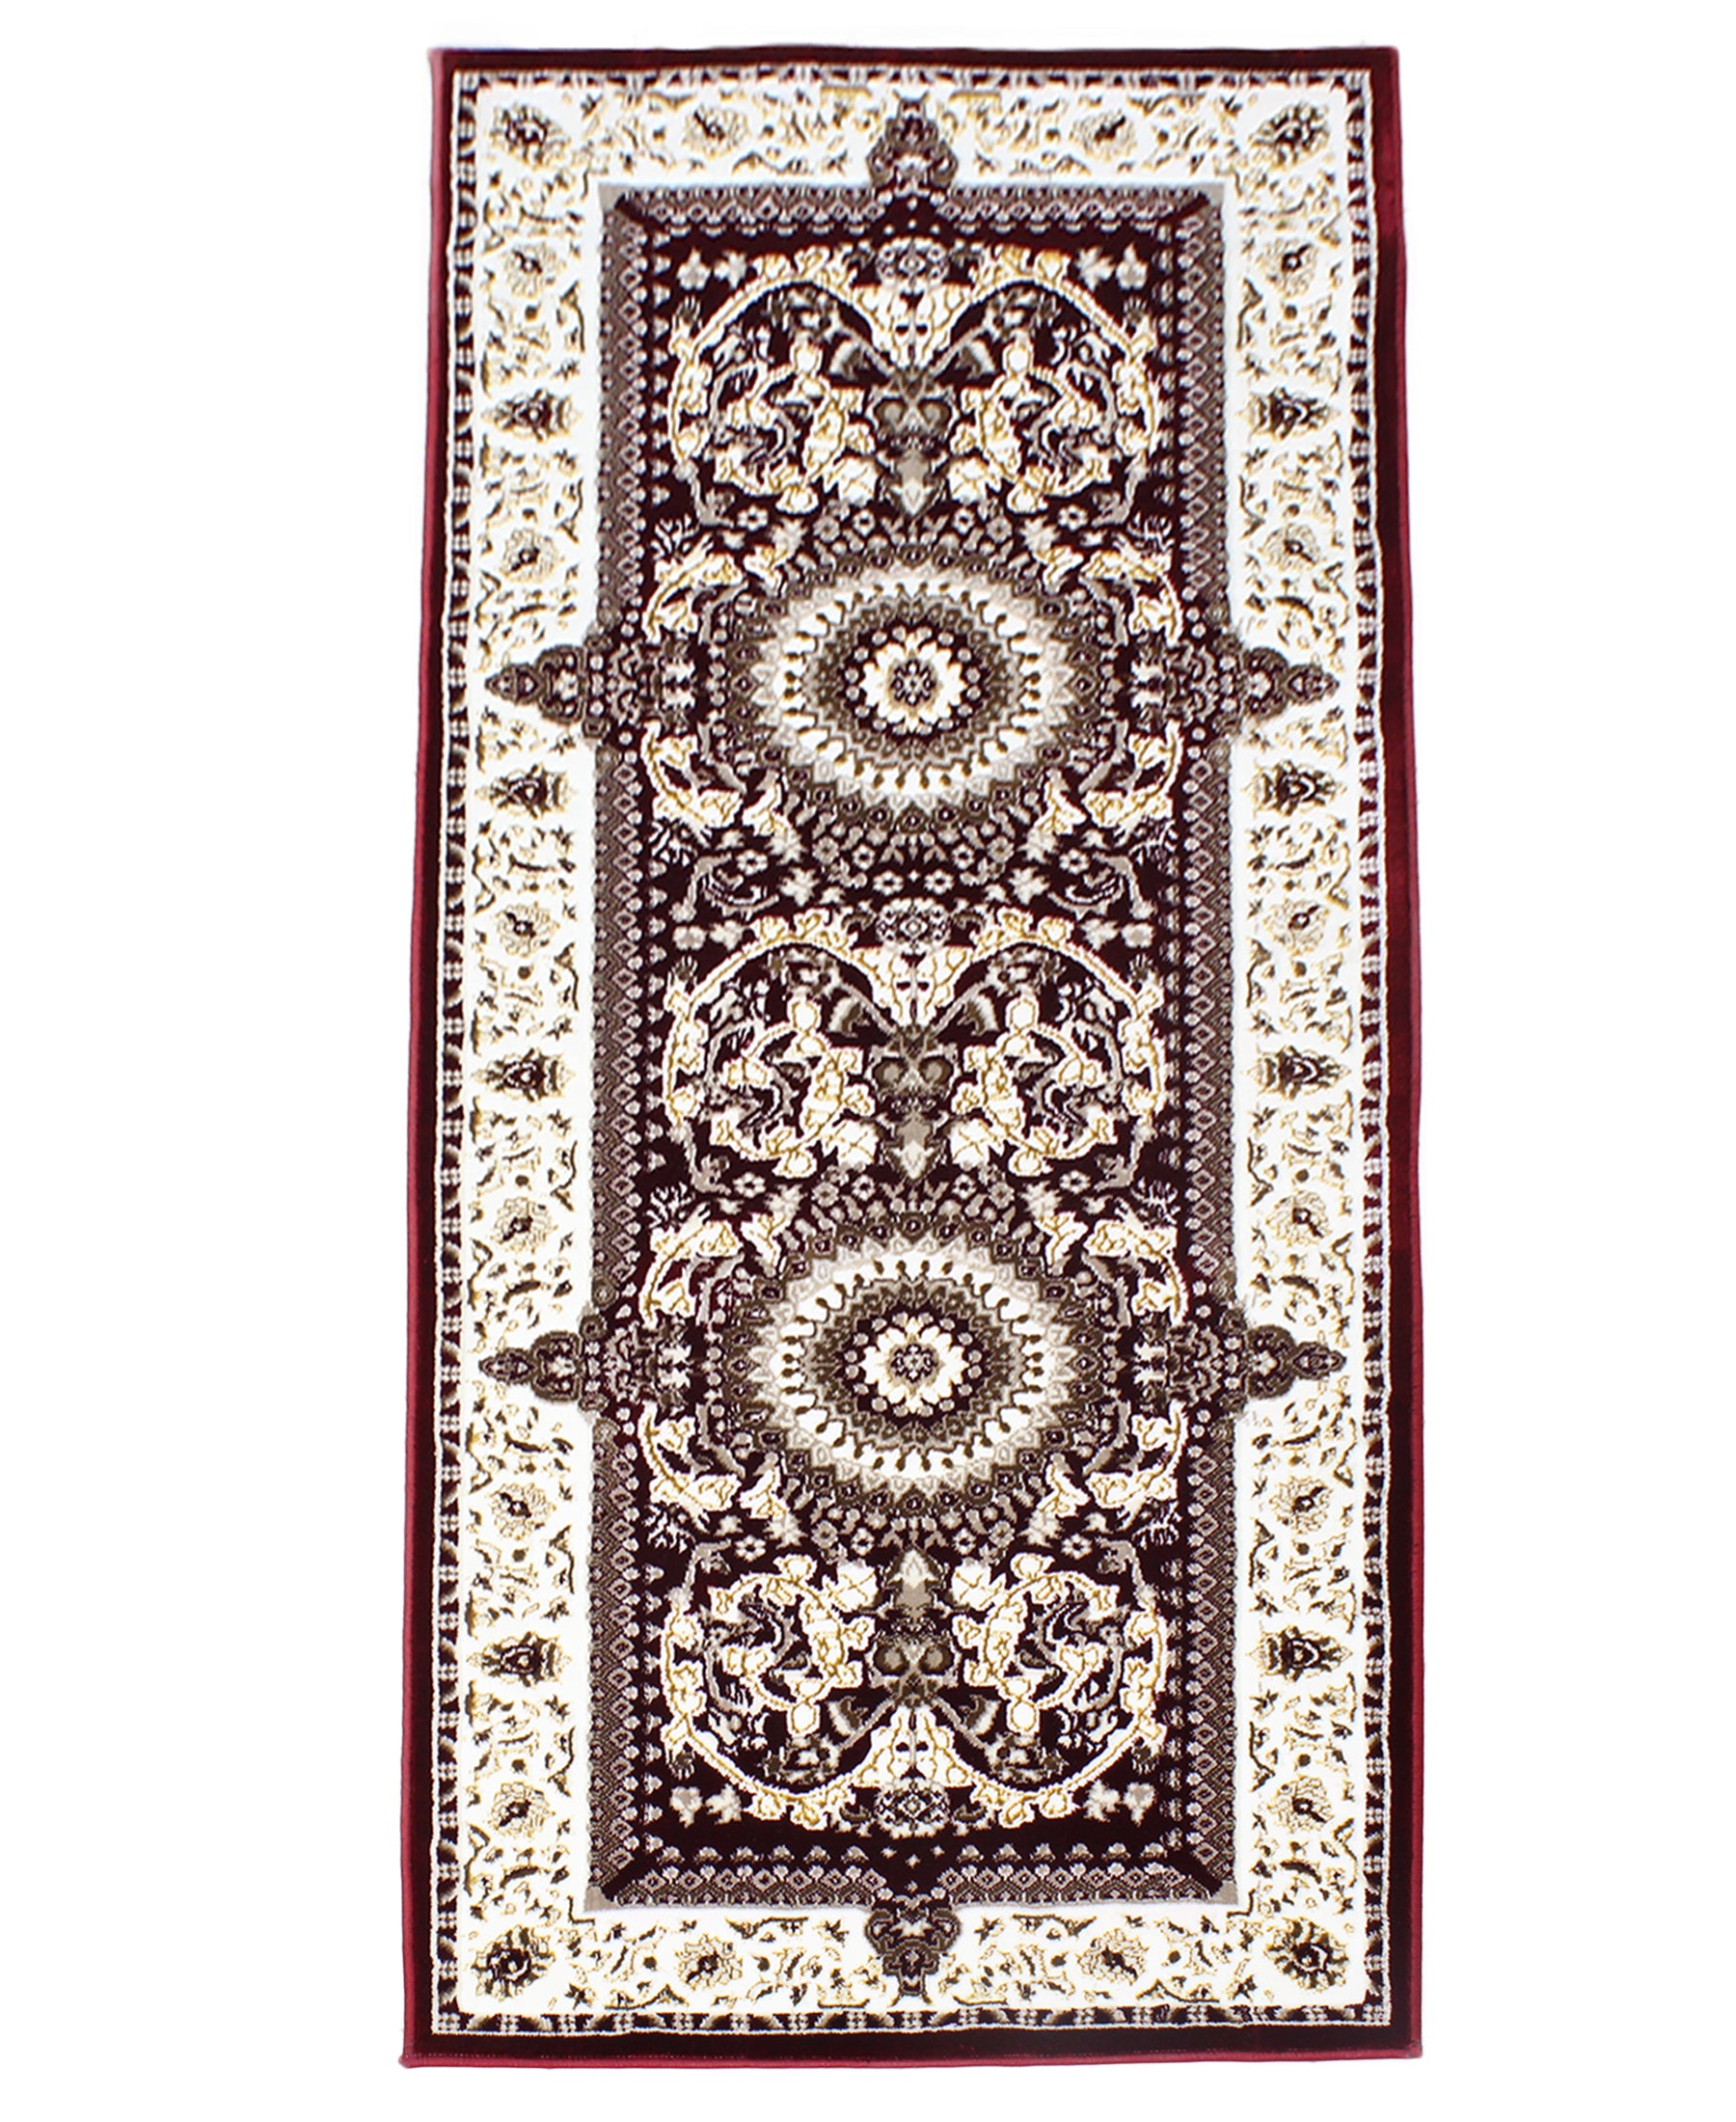 Damascus Arabian Delight Carpet 2000mm x 2700mm - Red